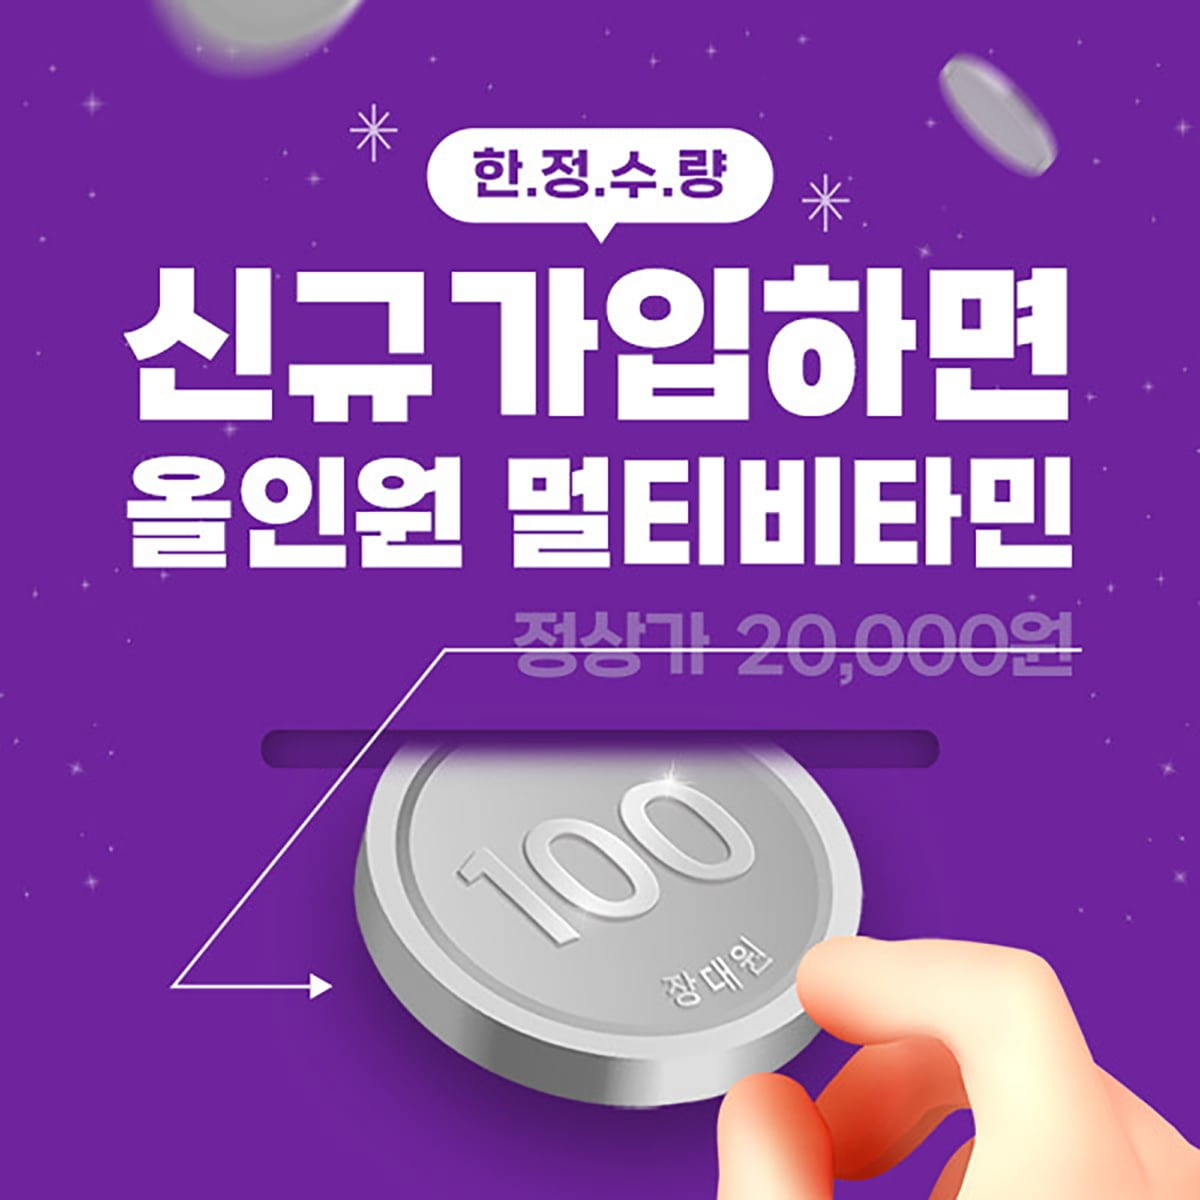 대원제약 '장대원', 신규 회원 대상 '100원 핫딜' 이벤트 개최